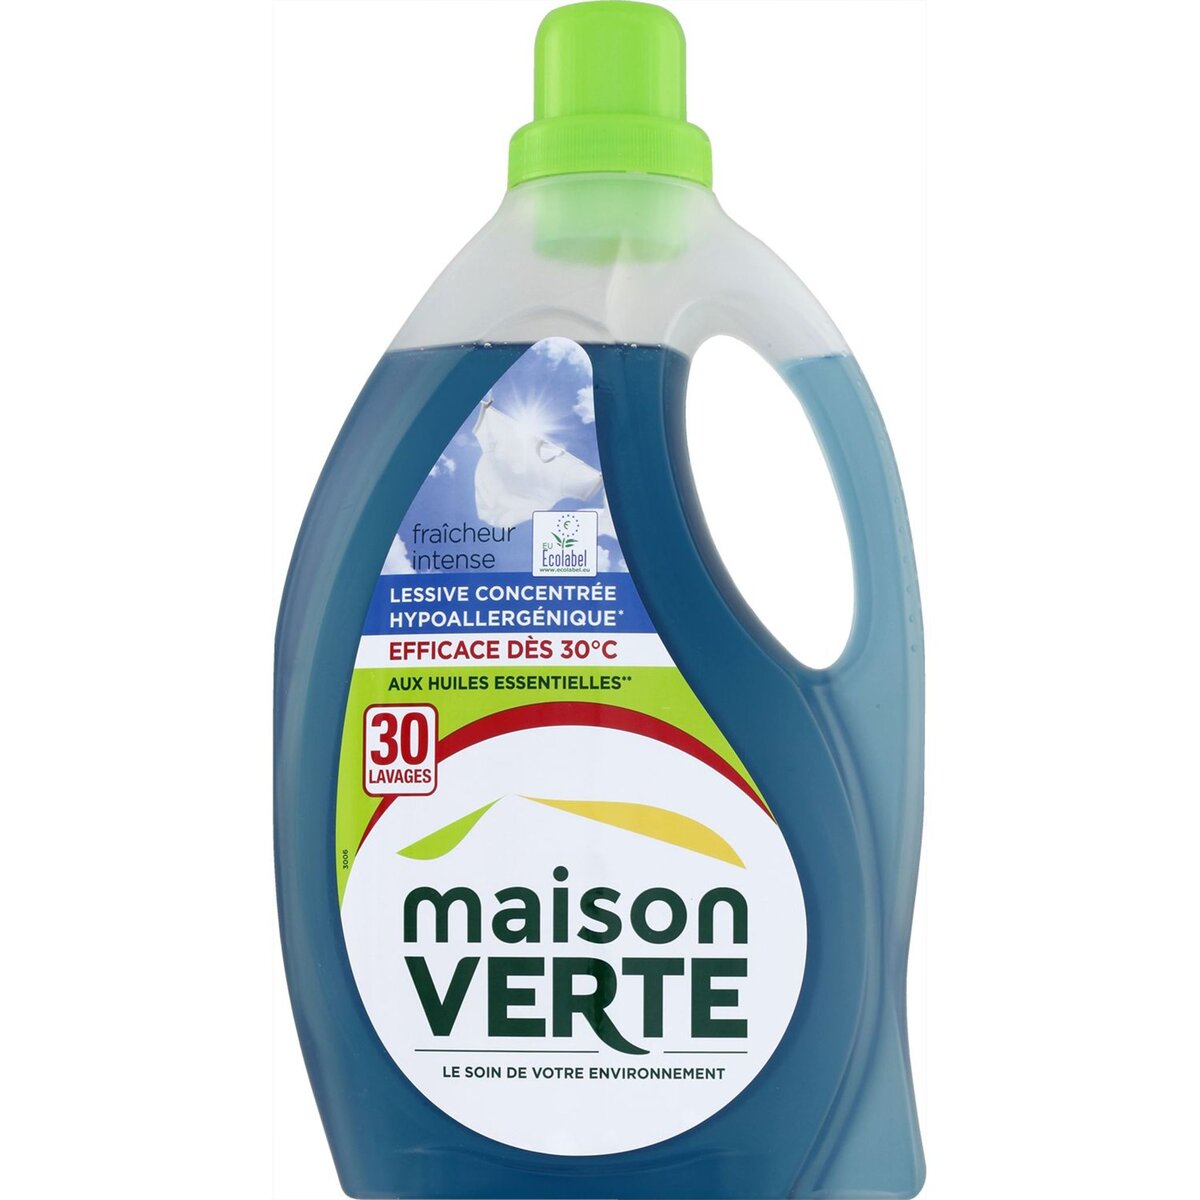 MAISON VERTE Maison Verte lessive fraîcheur intense 30 lavages 1,8l